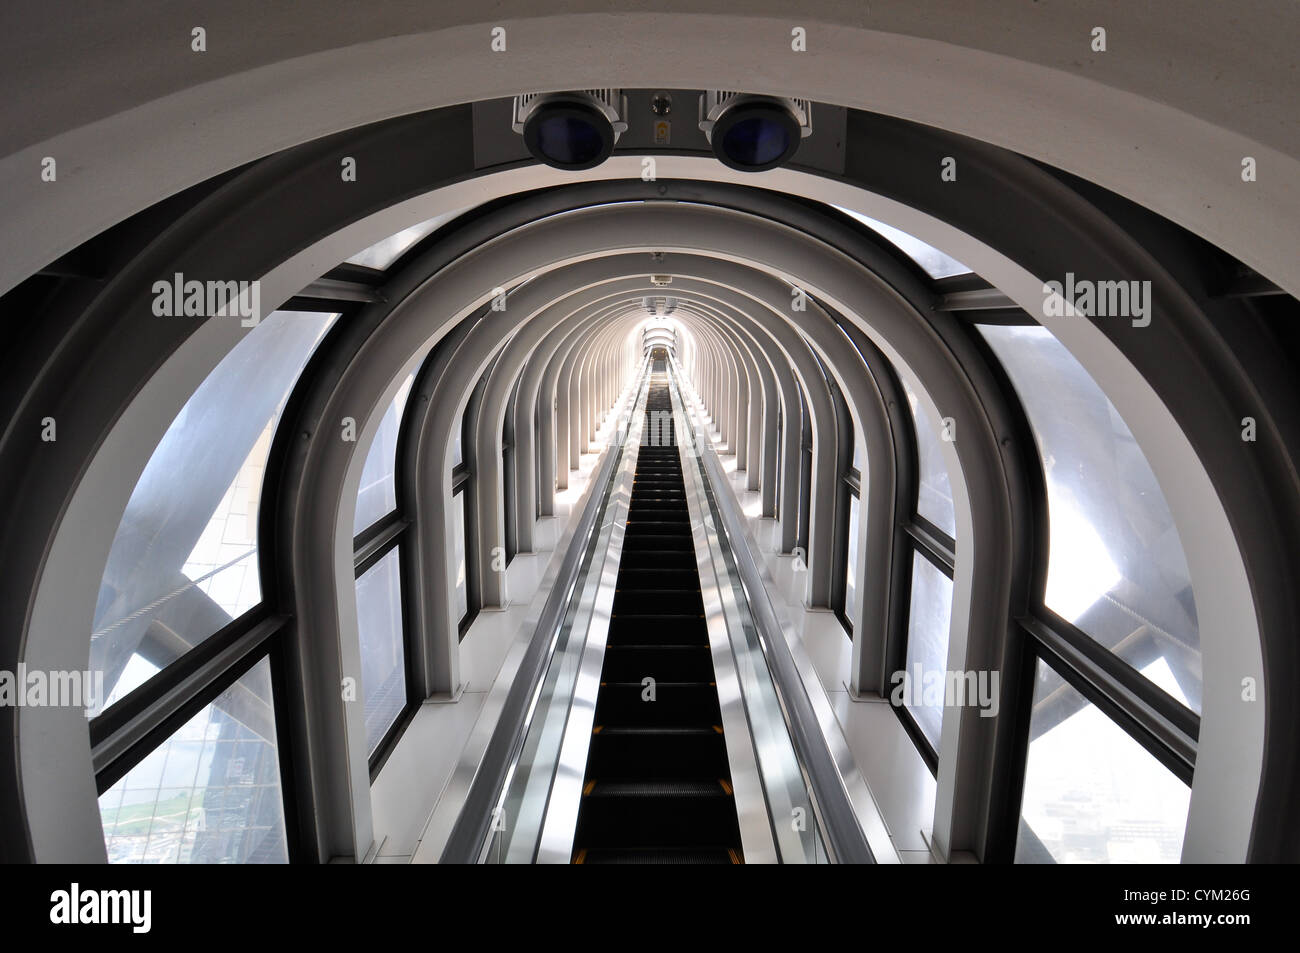 An escalator. Stock Photo